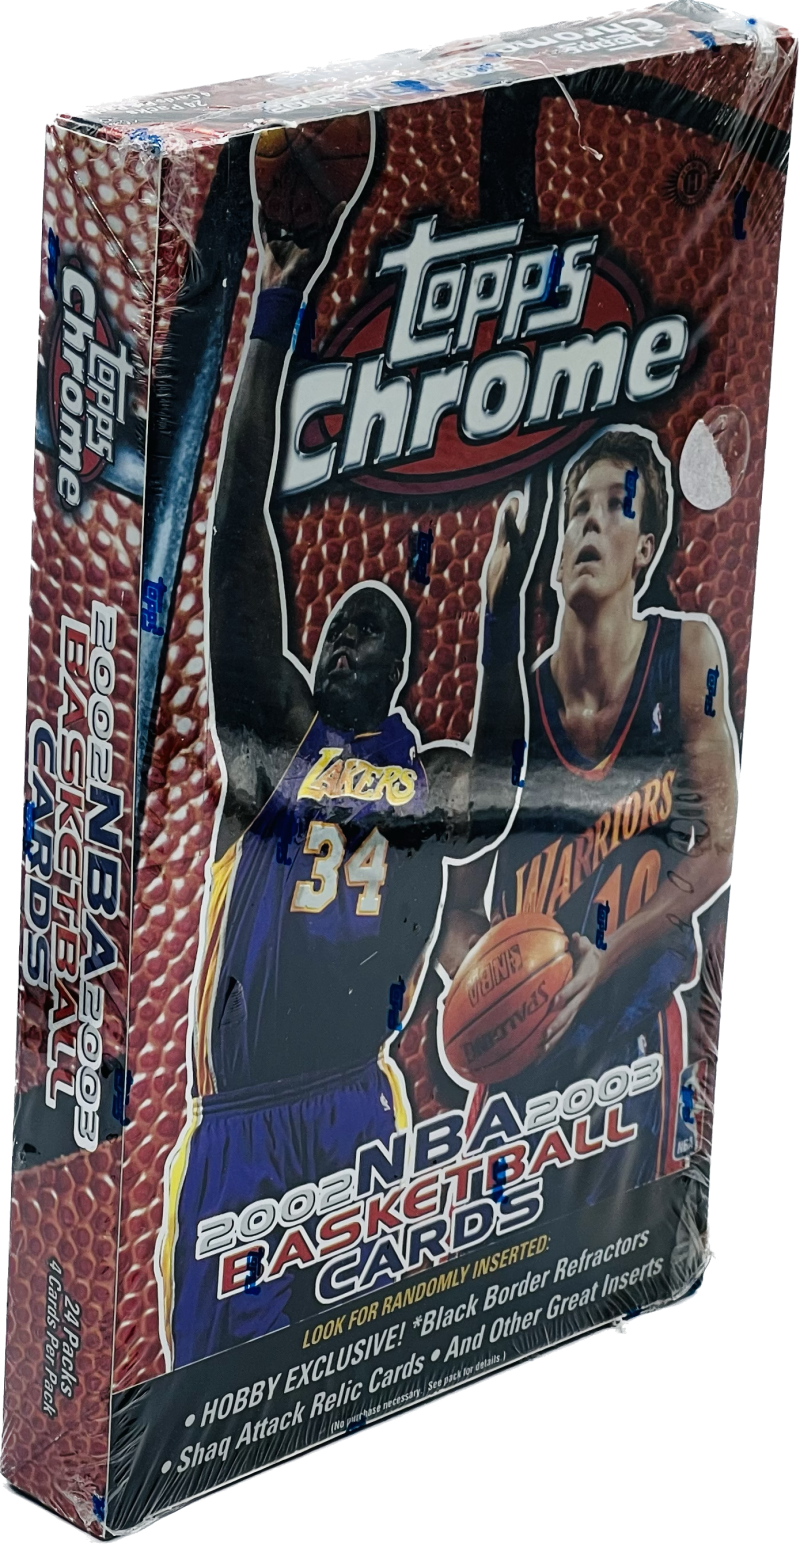 2002-03 Topps Chrome Basketball Hobby Box Image 1